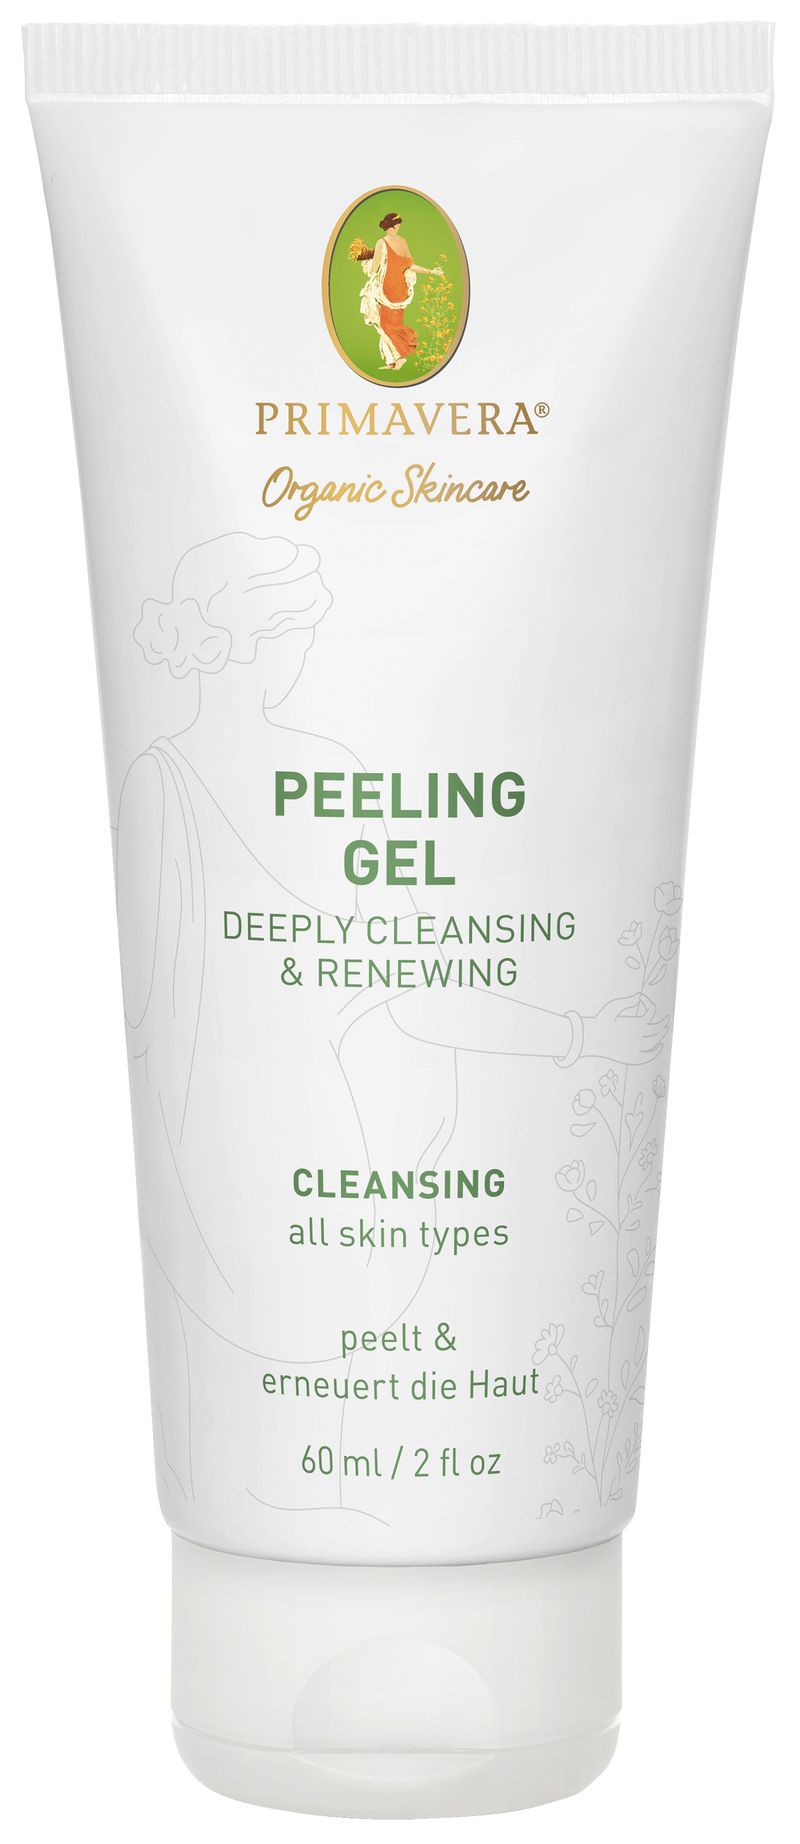 Peeling Gel - Deeply Cleansing & Renewing